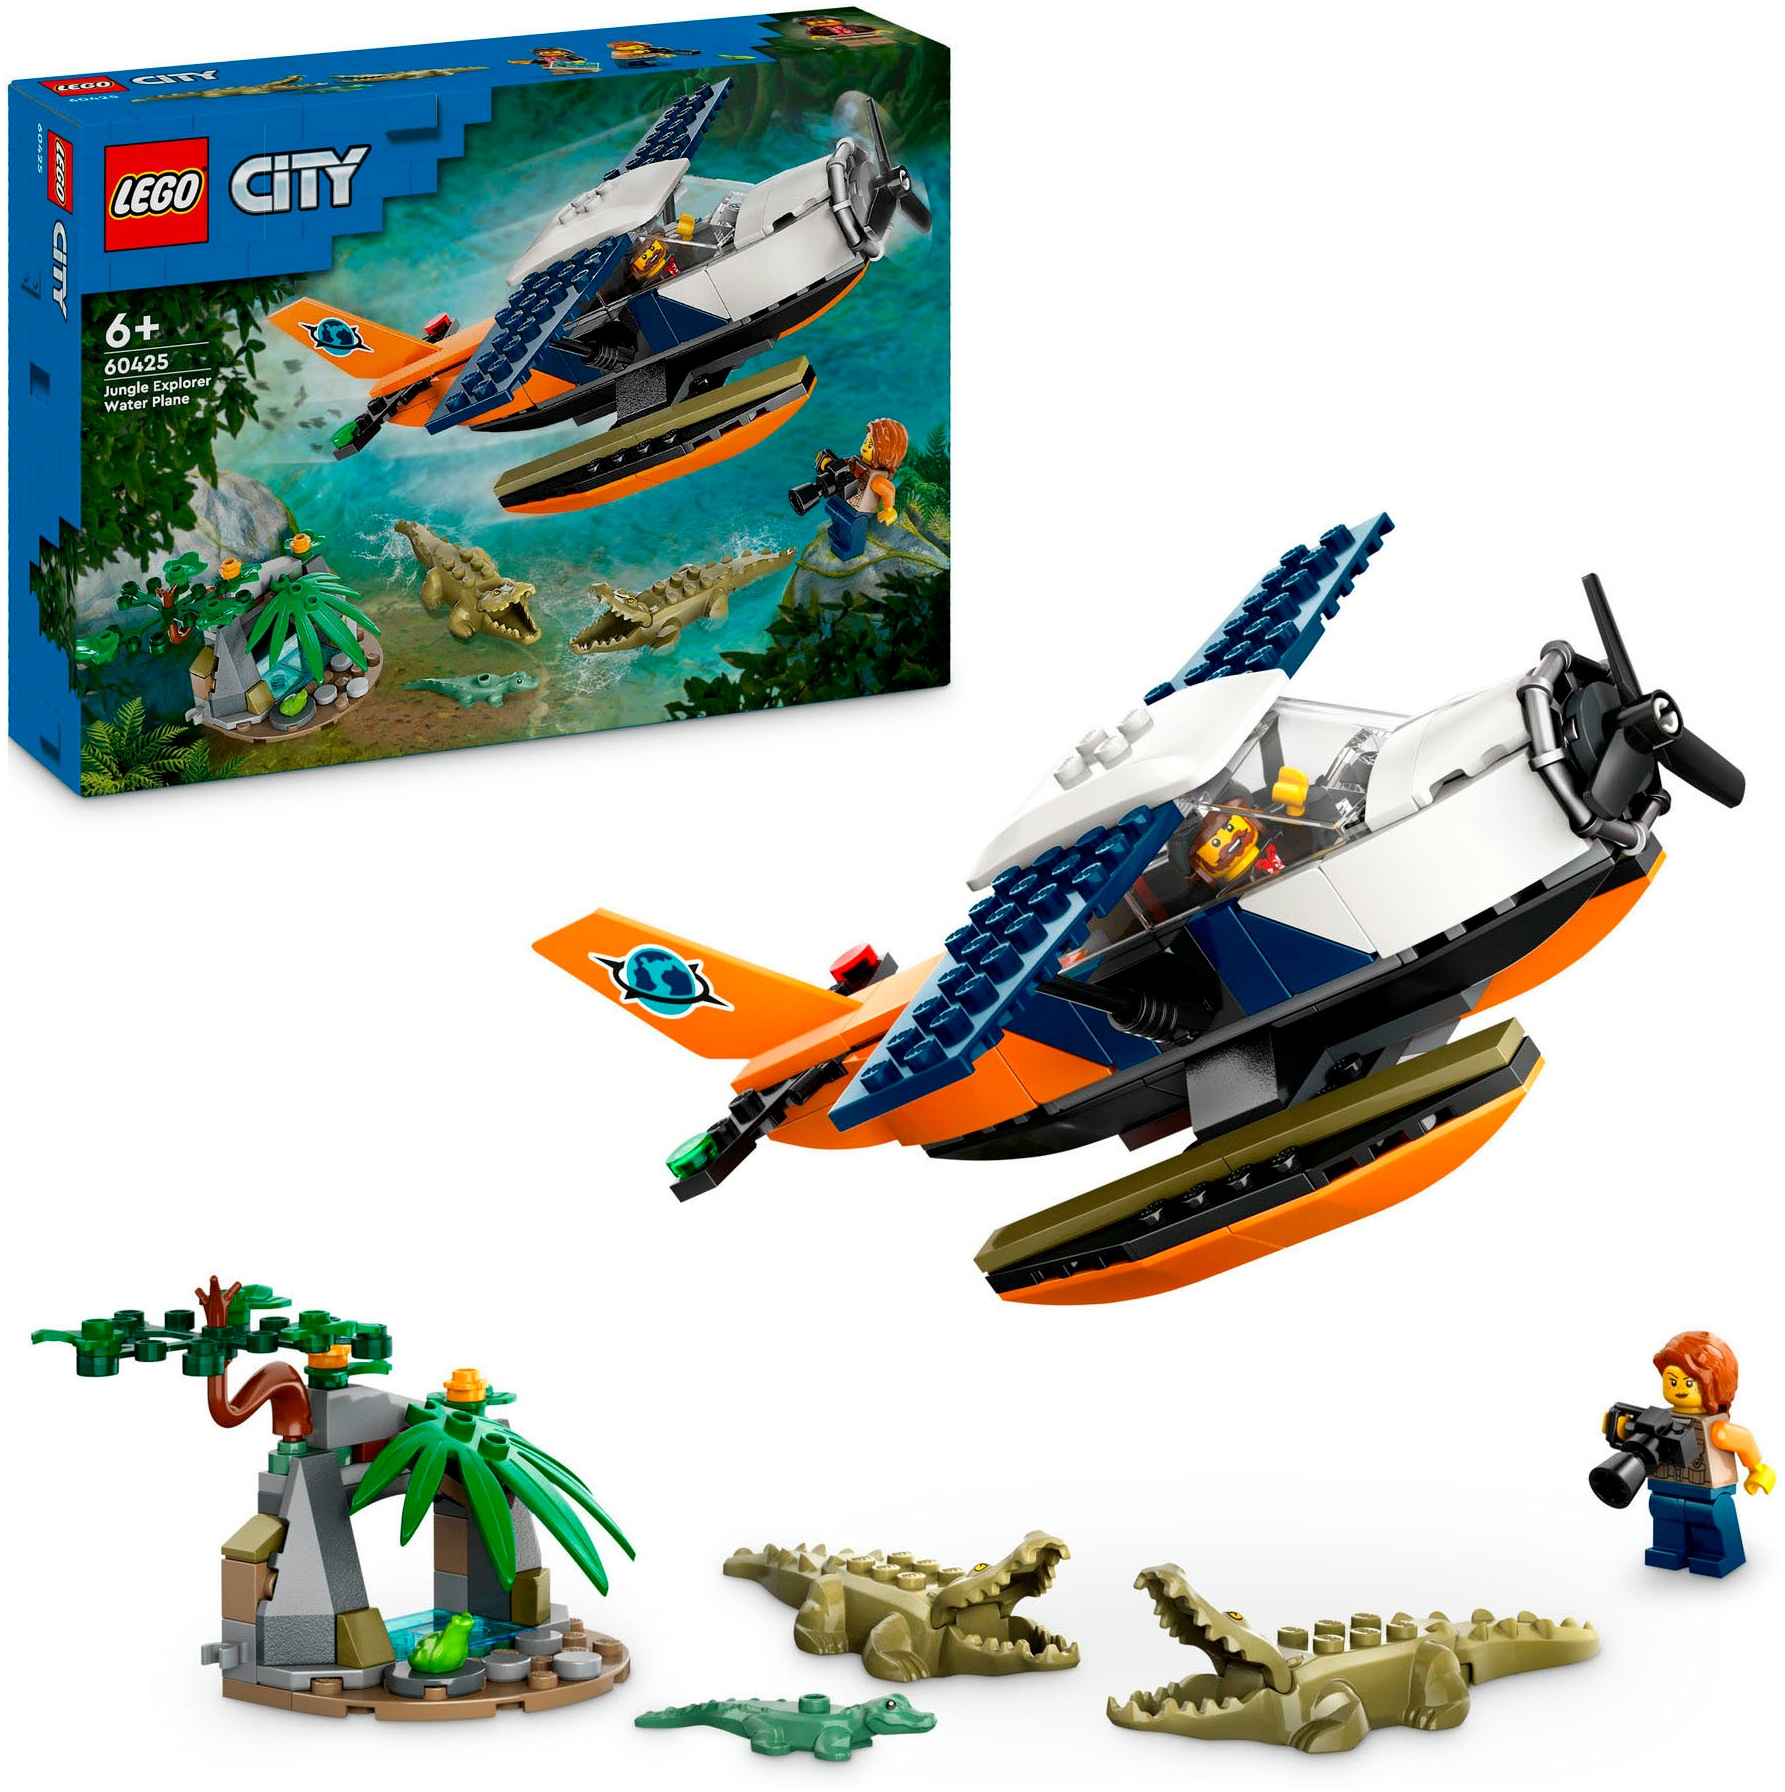 Konstruktionsspielsteine »Dschungelforscher-Wasserflugzeug (60425), LEGO City«, (177...